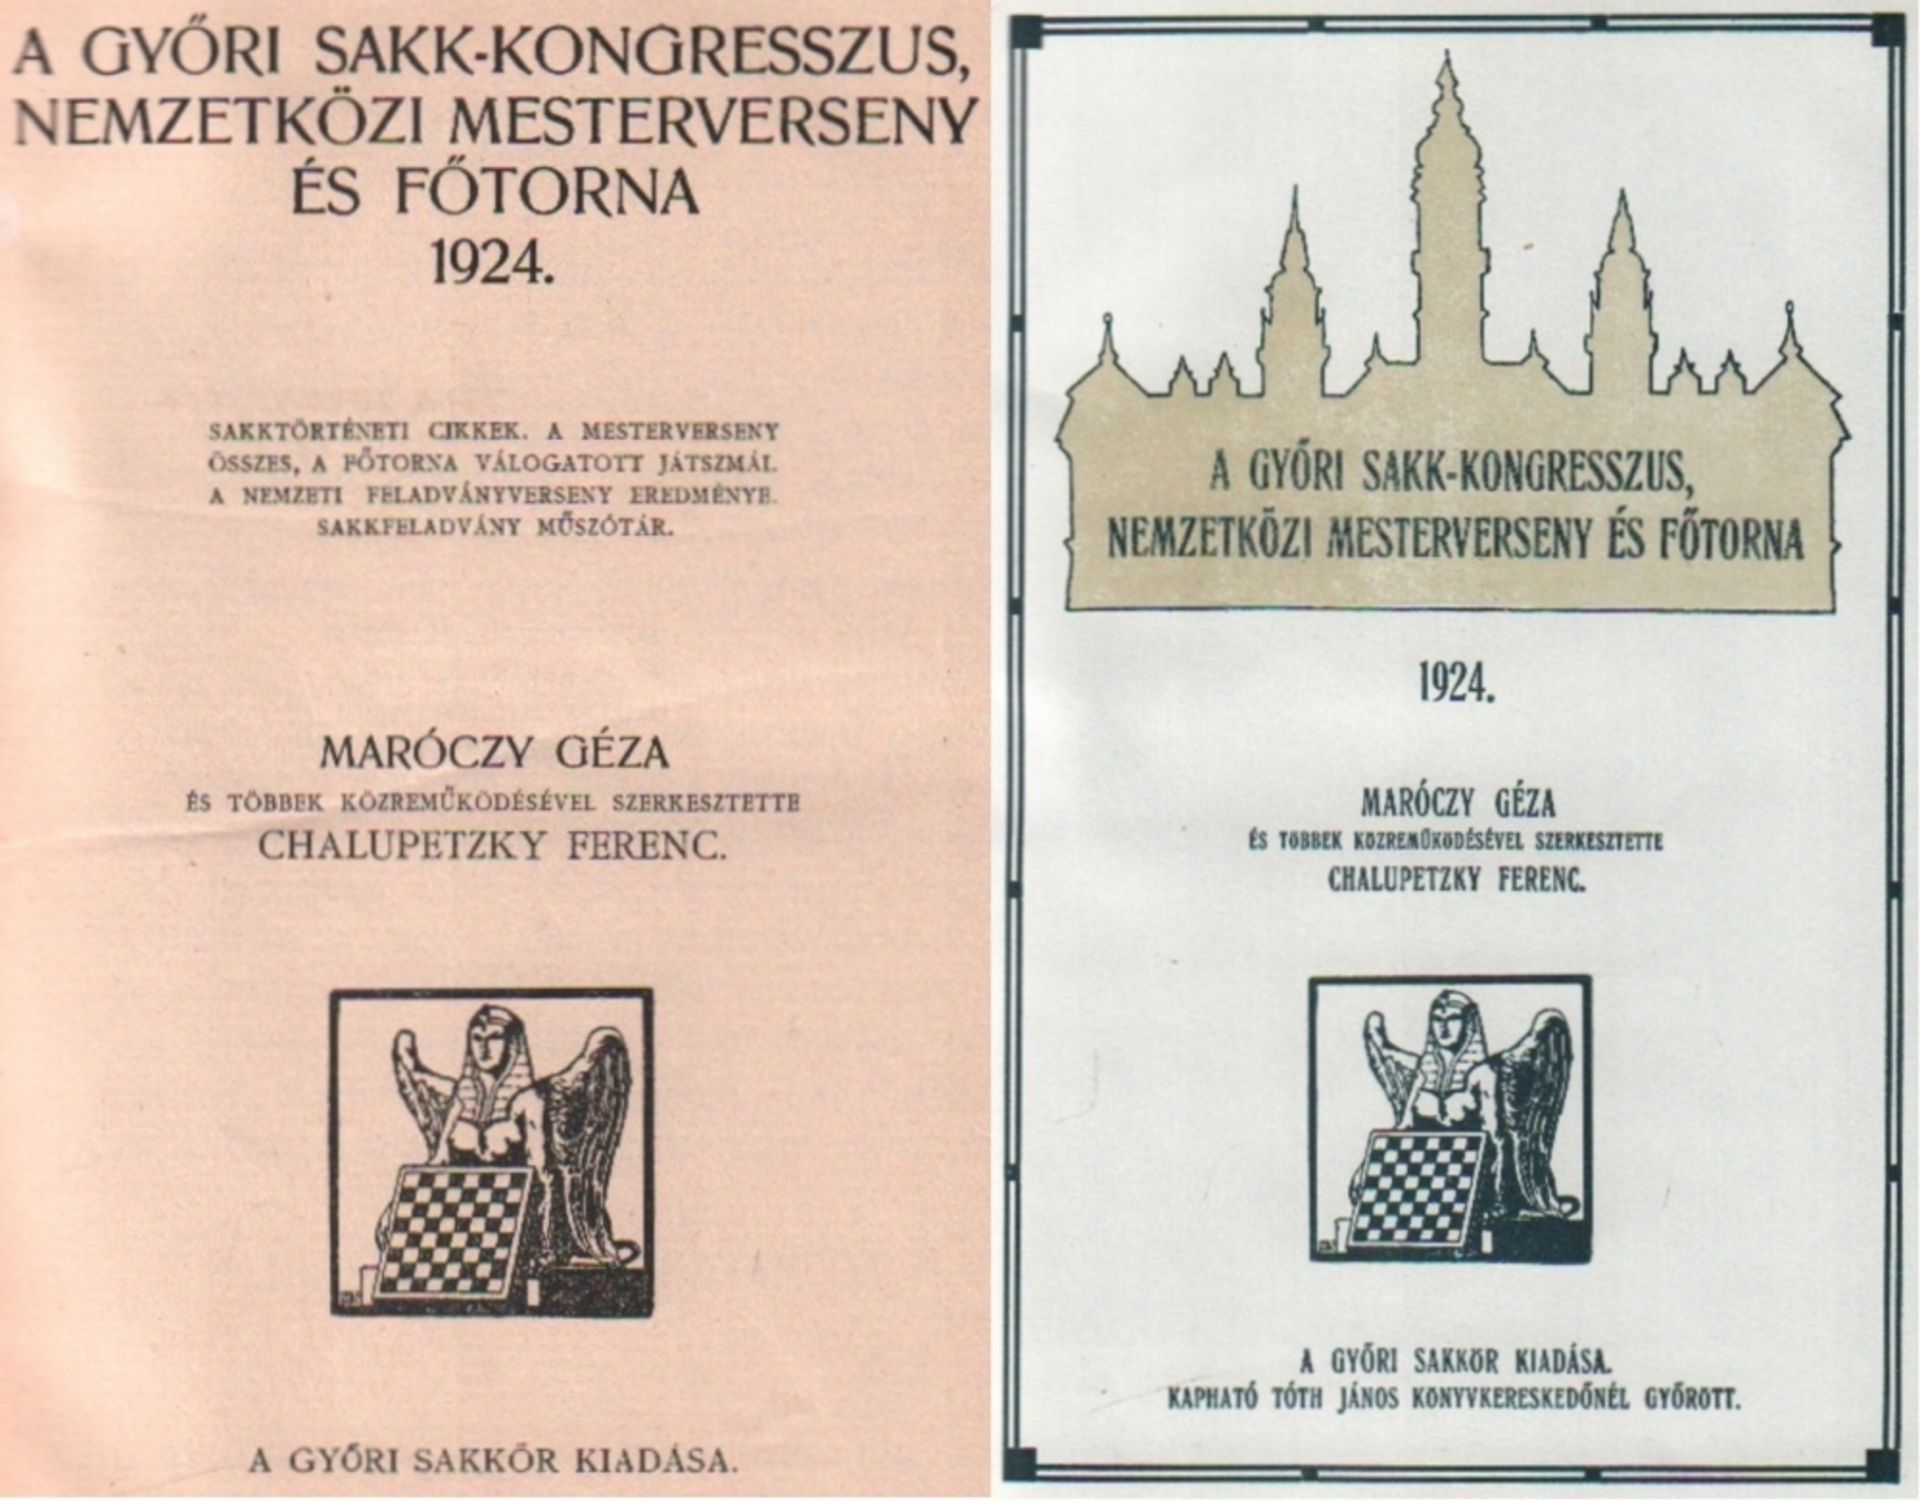 Györ 1924. Maróczy, Géza und Ferenc Chalupetzky. (Hrsg.) A Györi Sakk - Kongresszus, Nemzetközi